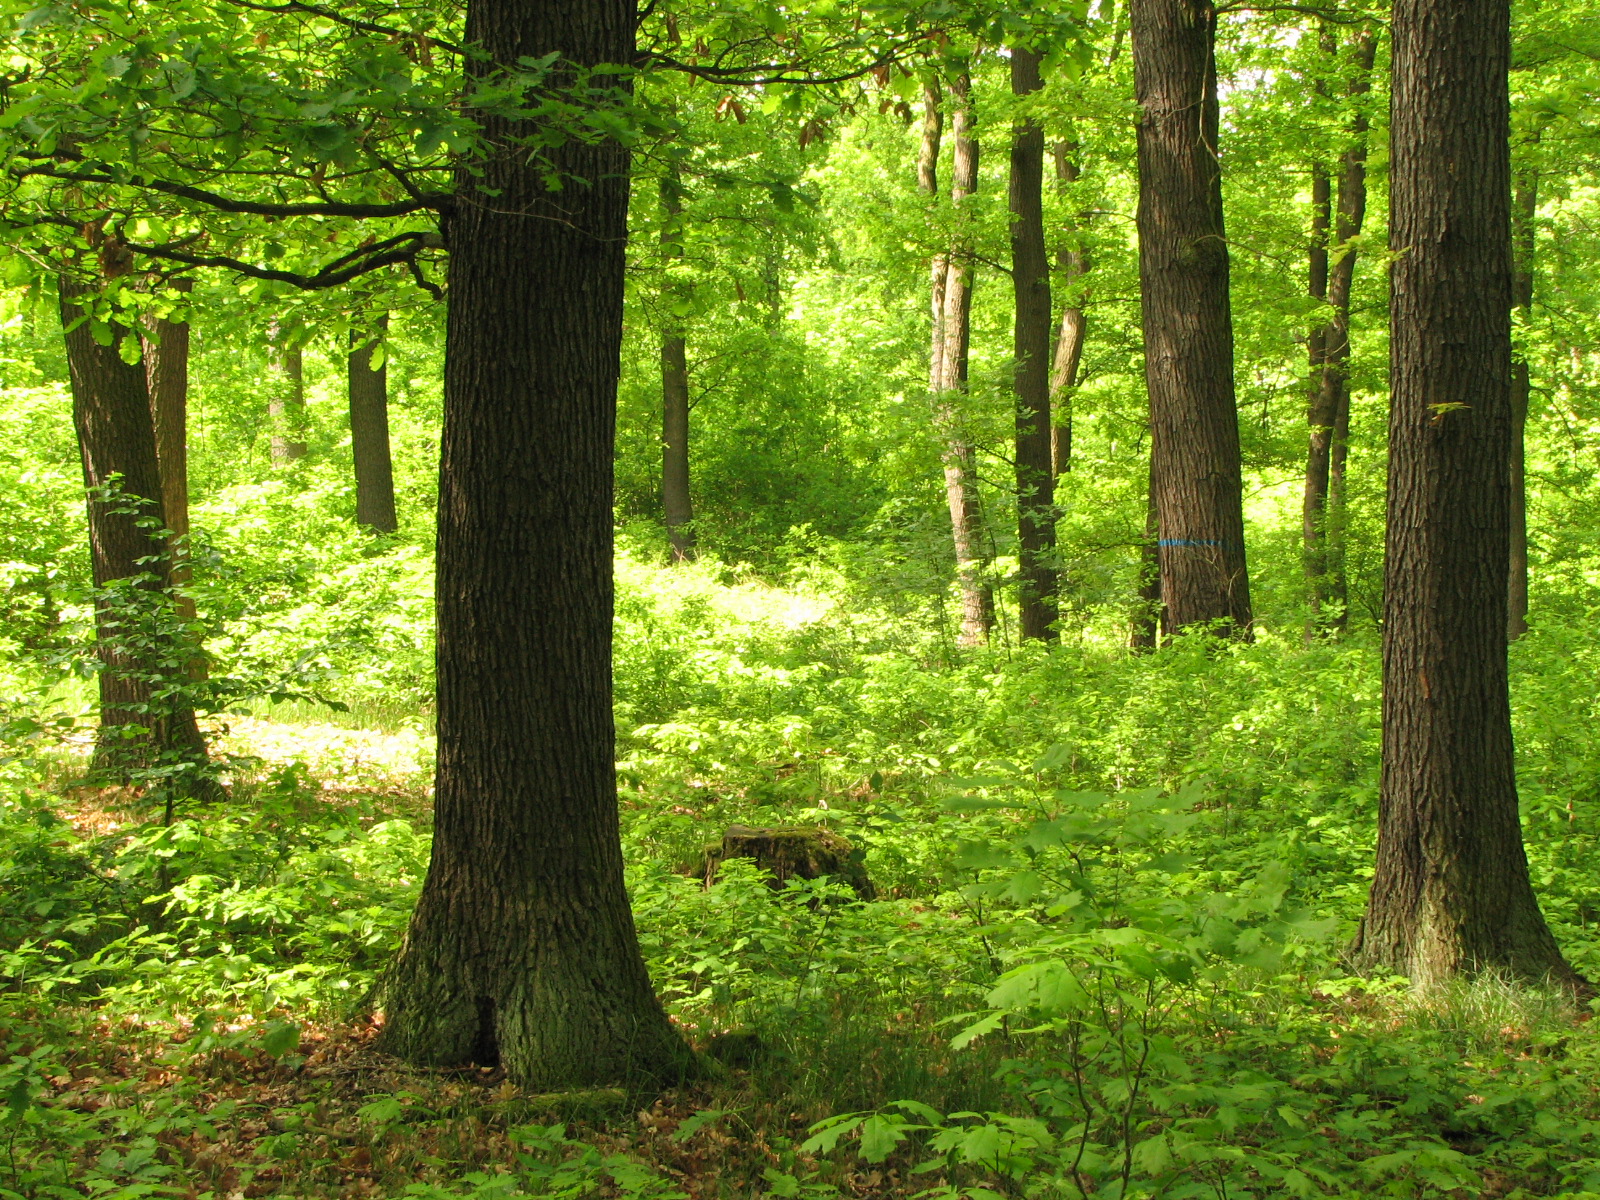 Xaverovský háj, obnova dubového porostu podrostním způsobem v pokročilém stádiu obnovy. Modře vyznačen strom na dožití dle požadavků FSC. Foto Dan Frantík